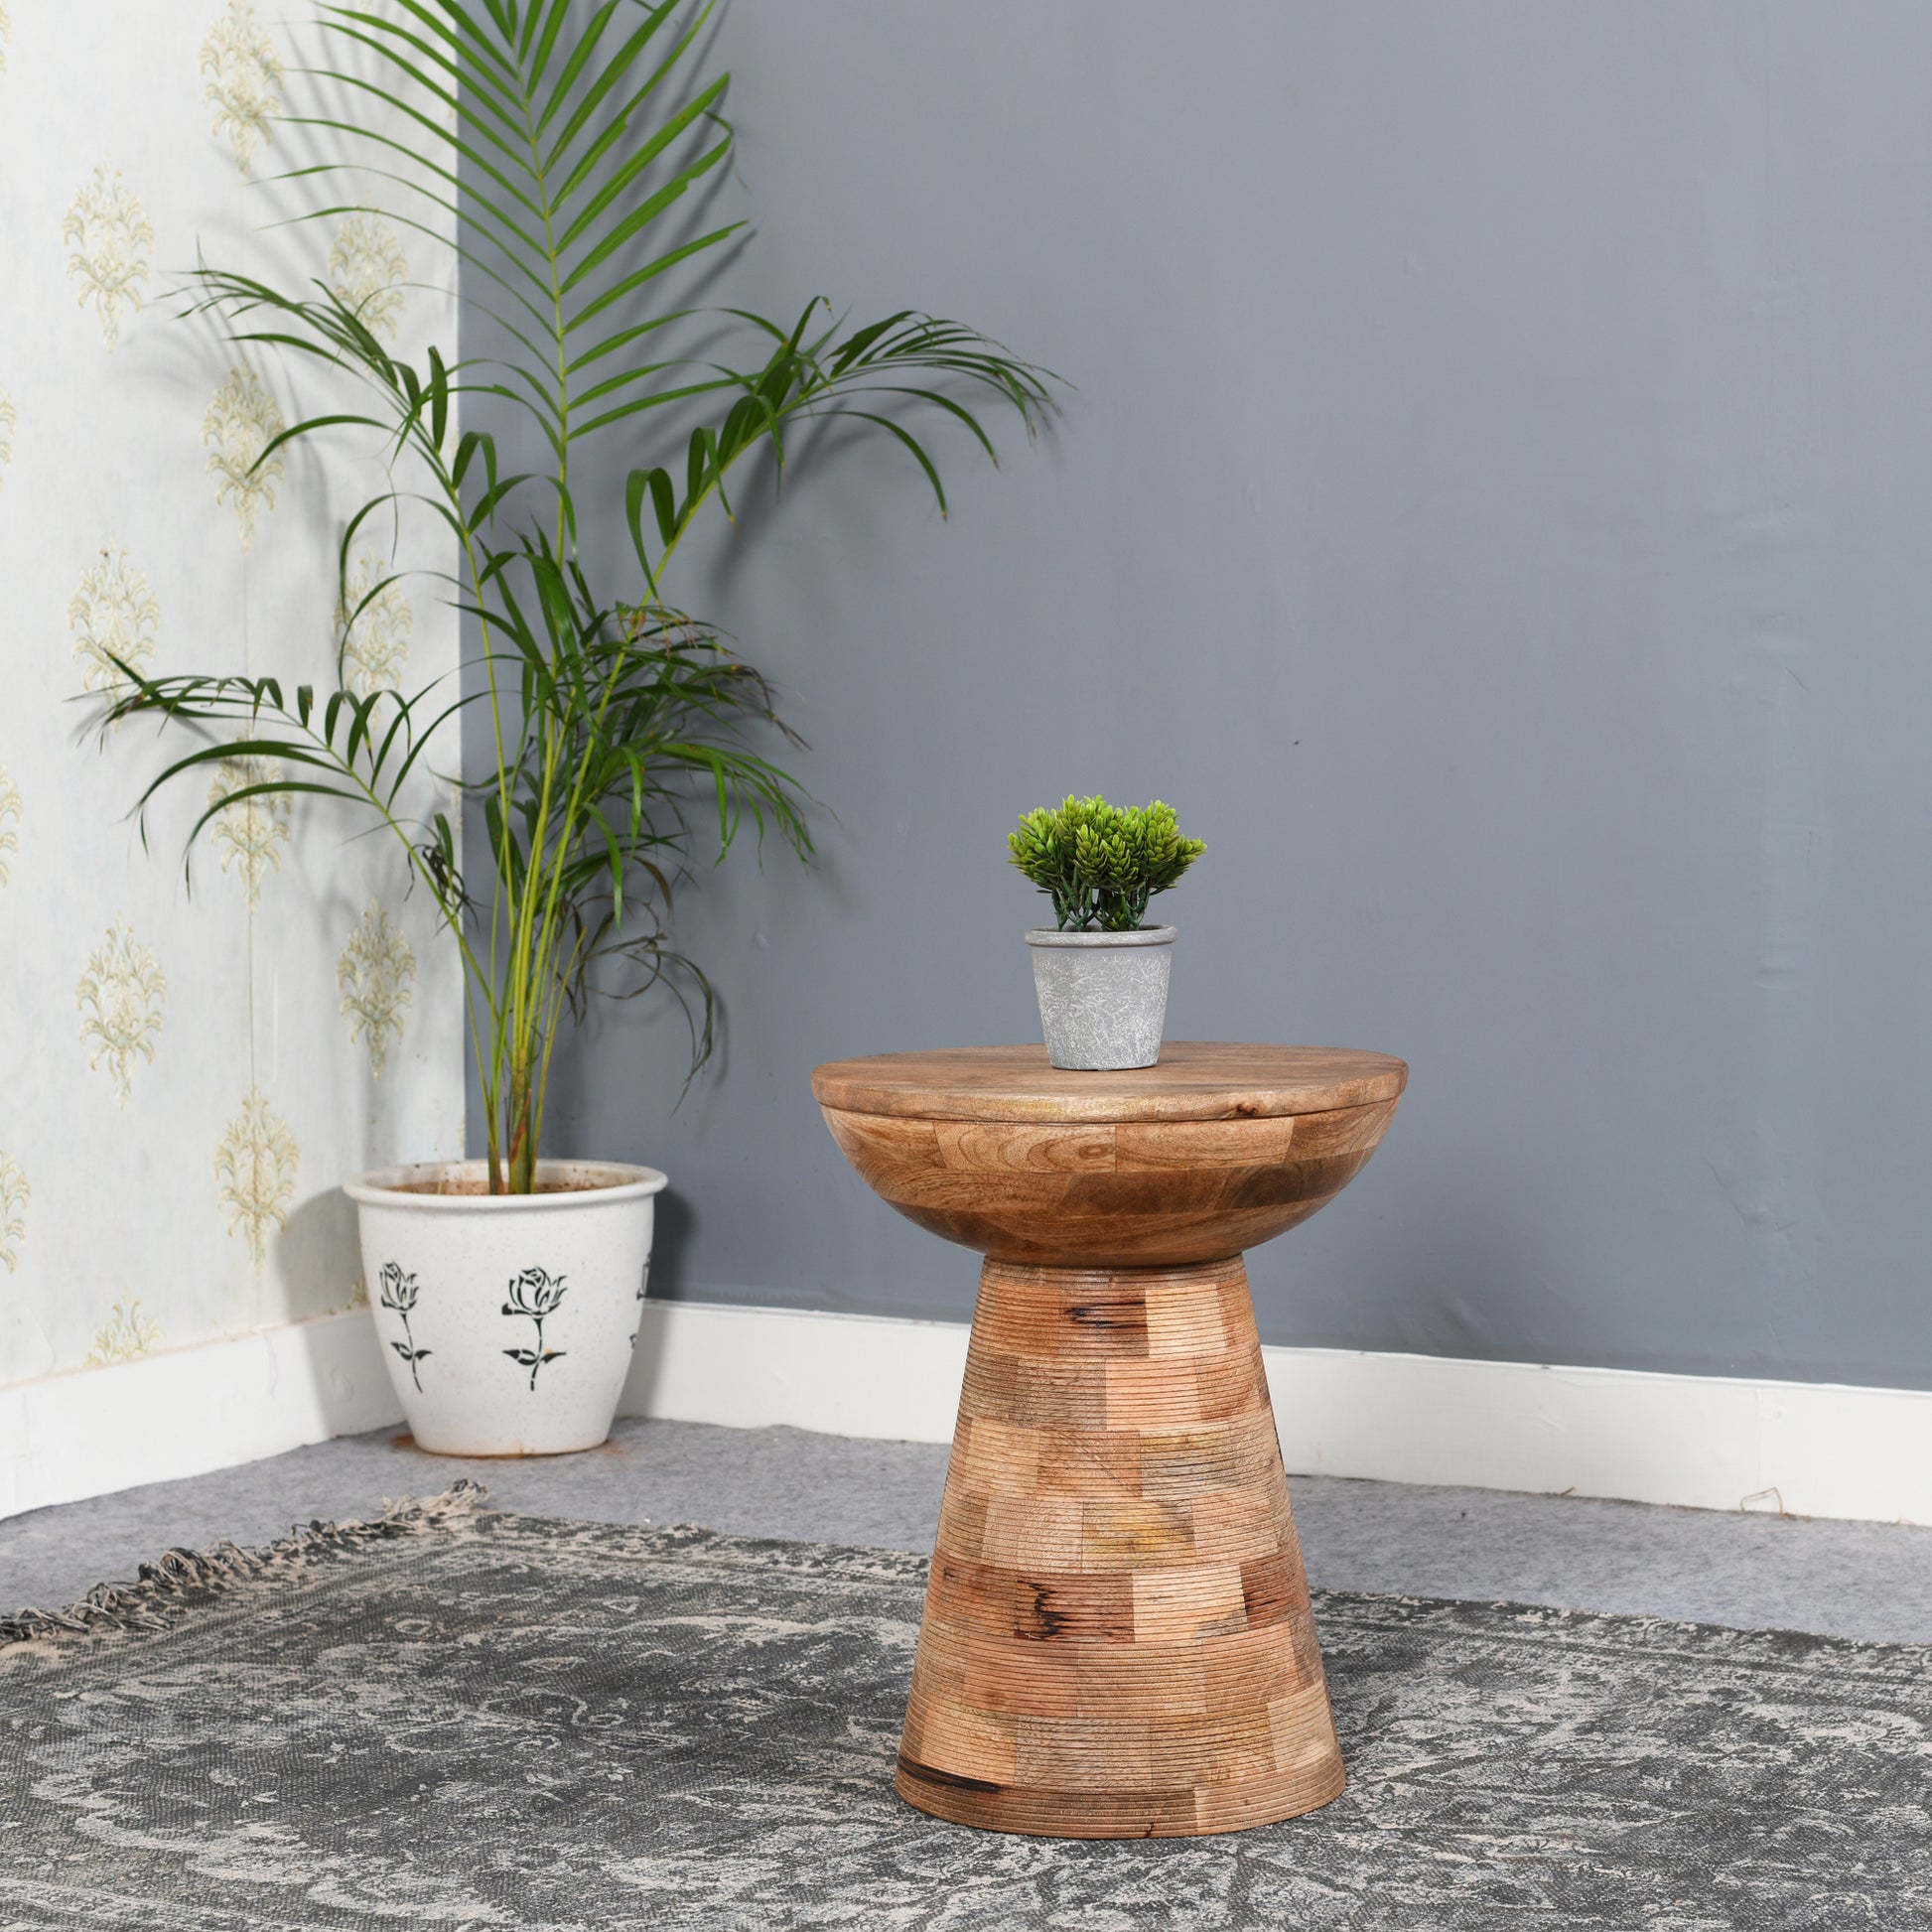 Solid Wood Round Side Table Mushroom Style, elegant and Versatile